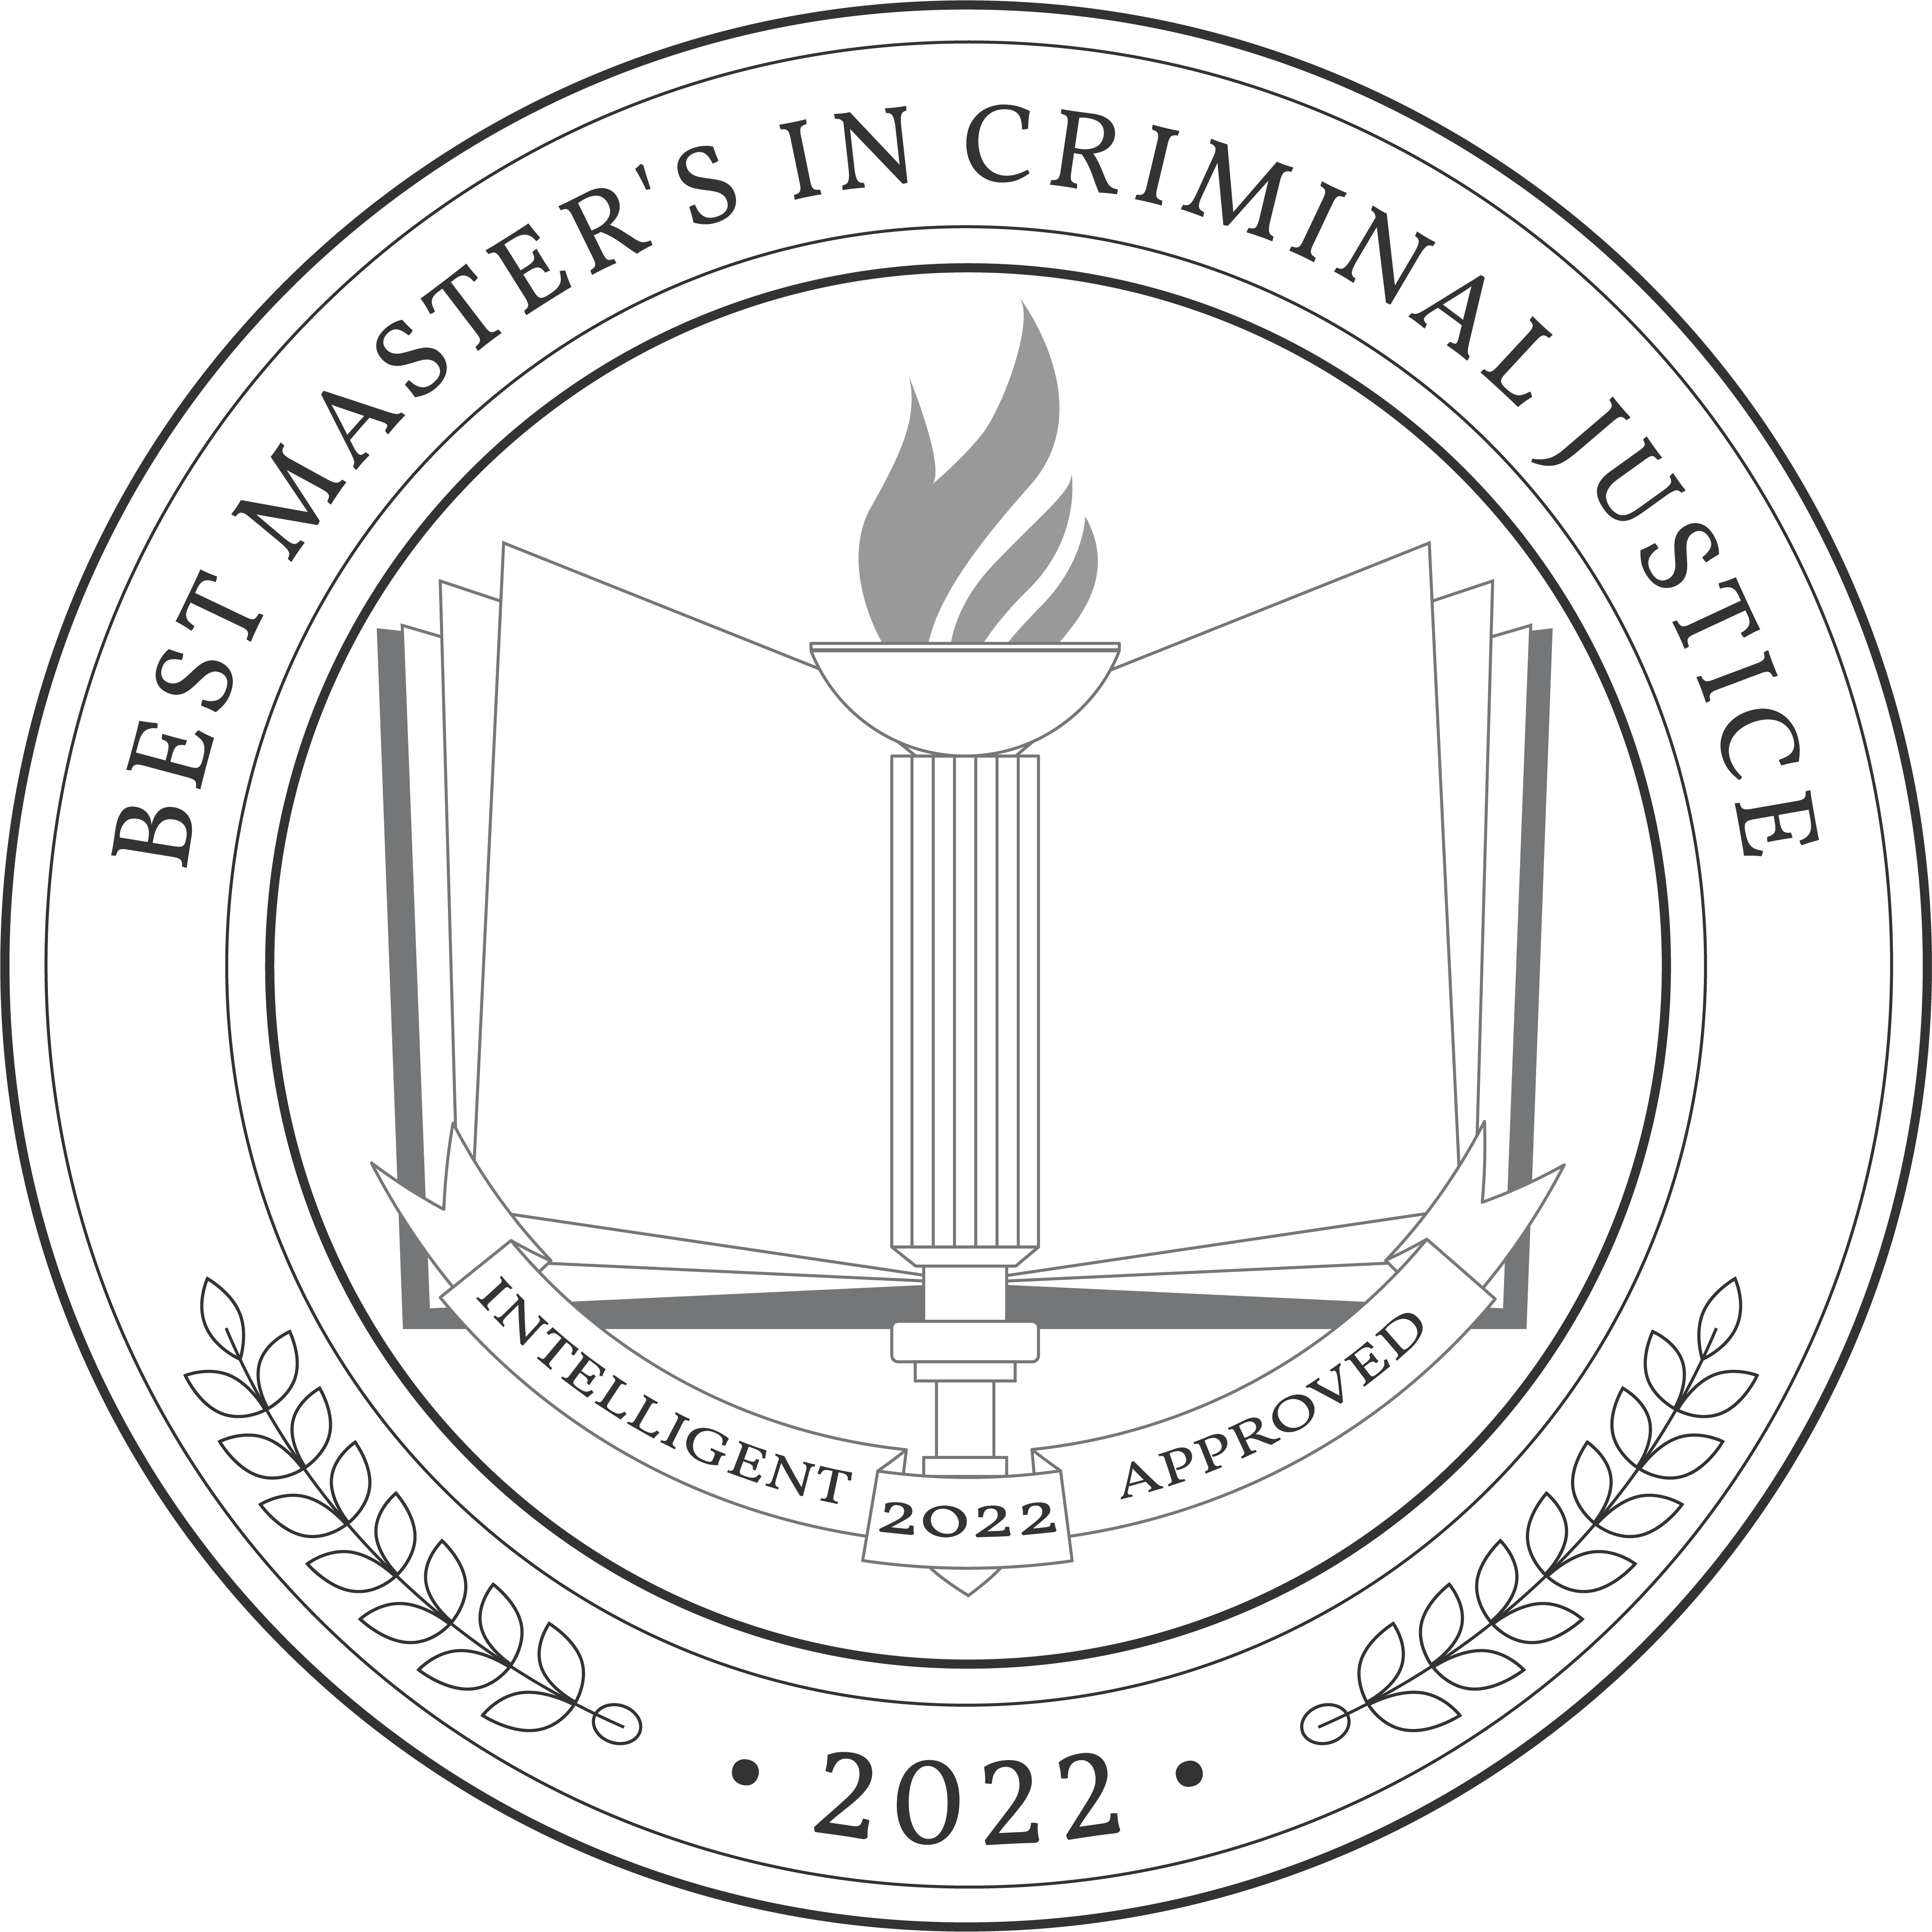 Best Online Master's in Criminal Justice Degree Programs